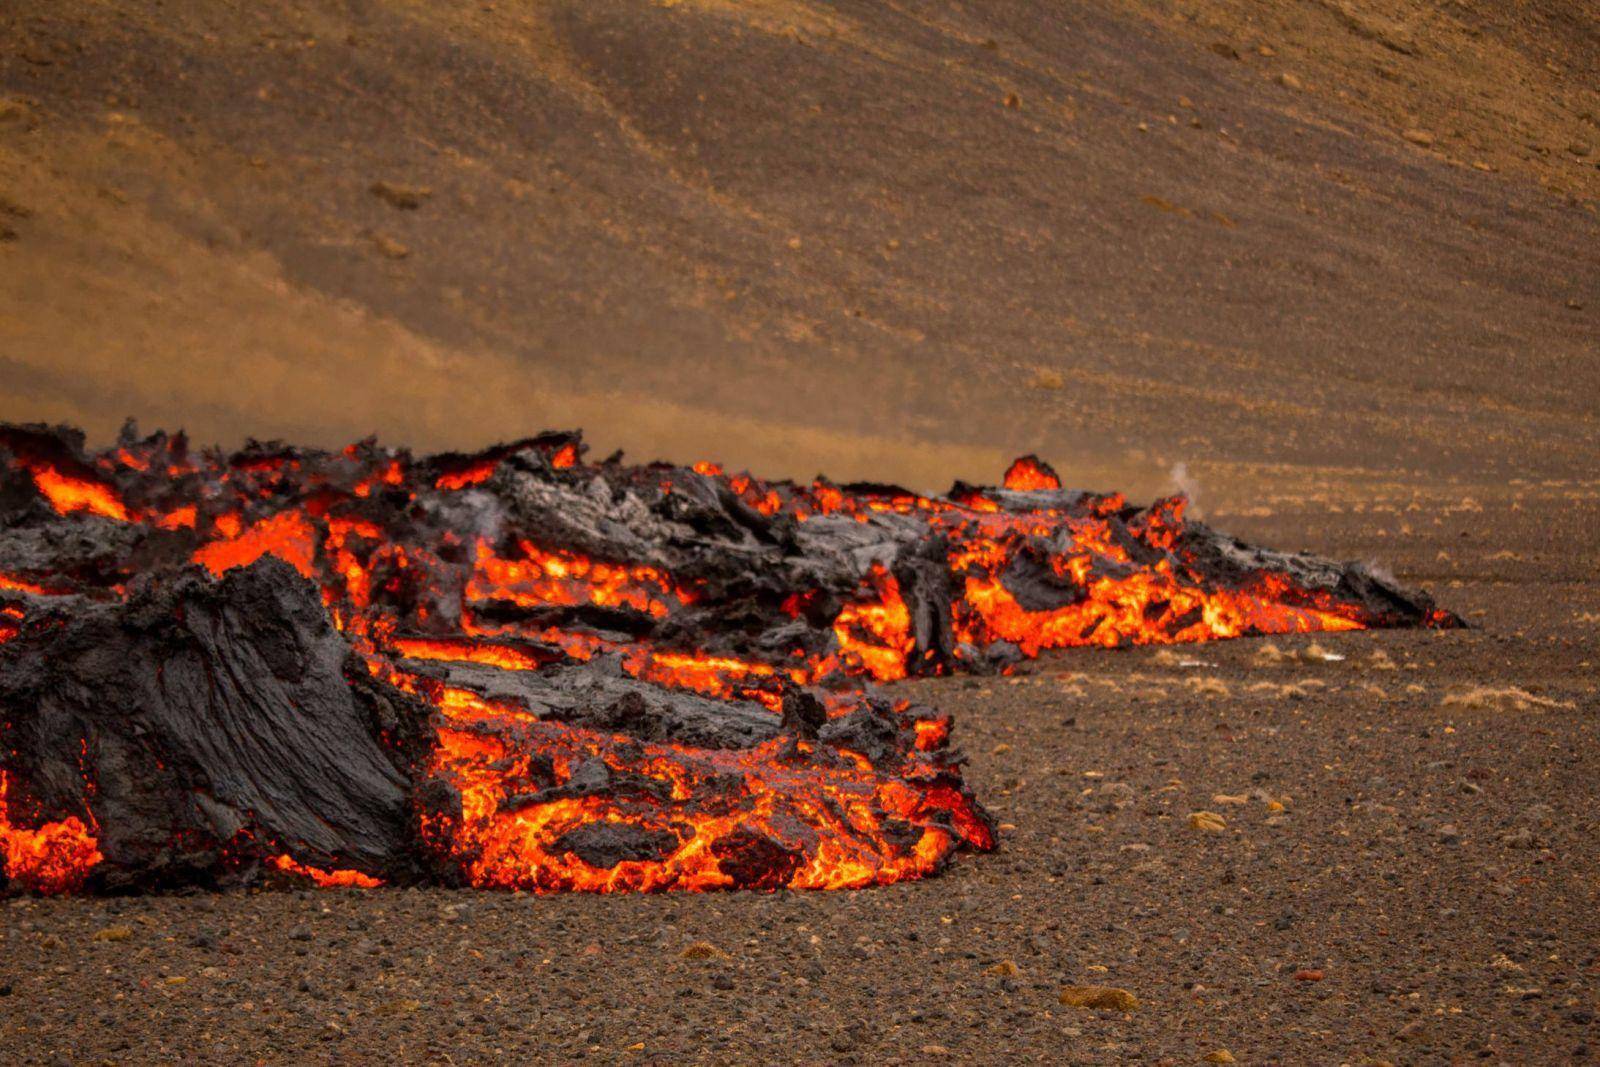 图集丨冰岛火山喷发特写,岩浆四溅宛如炼狱